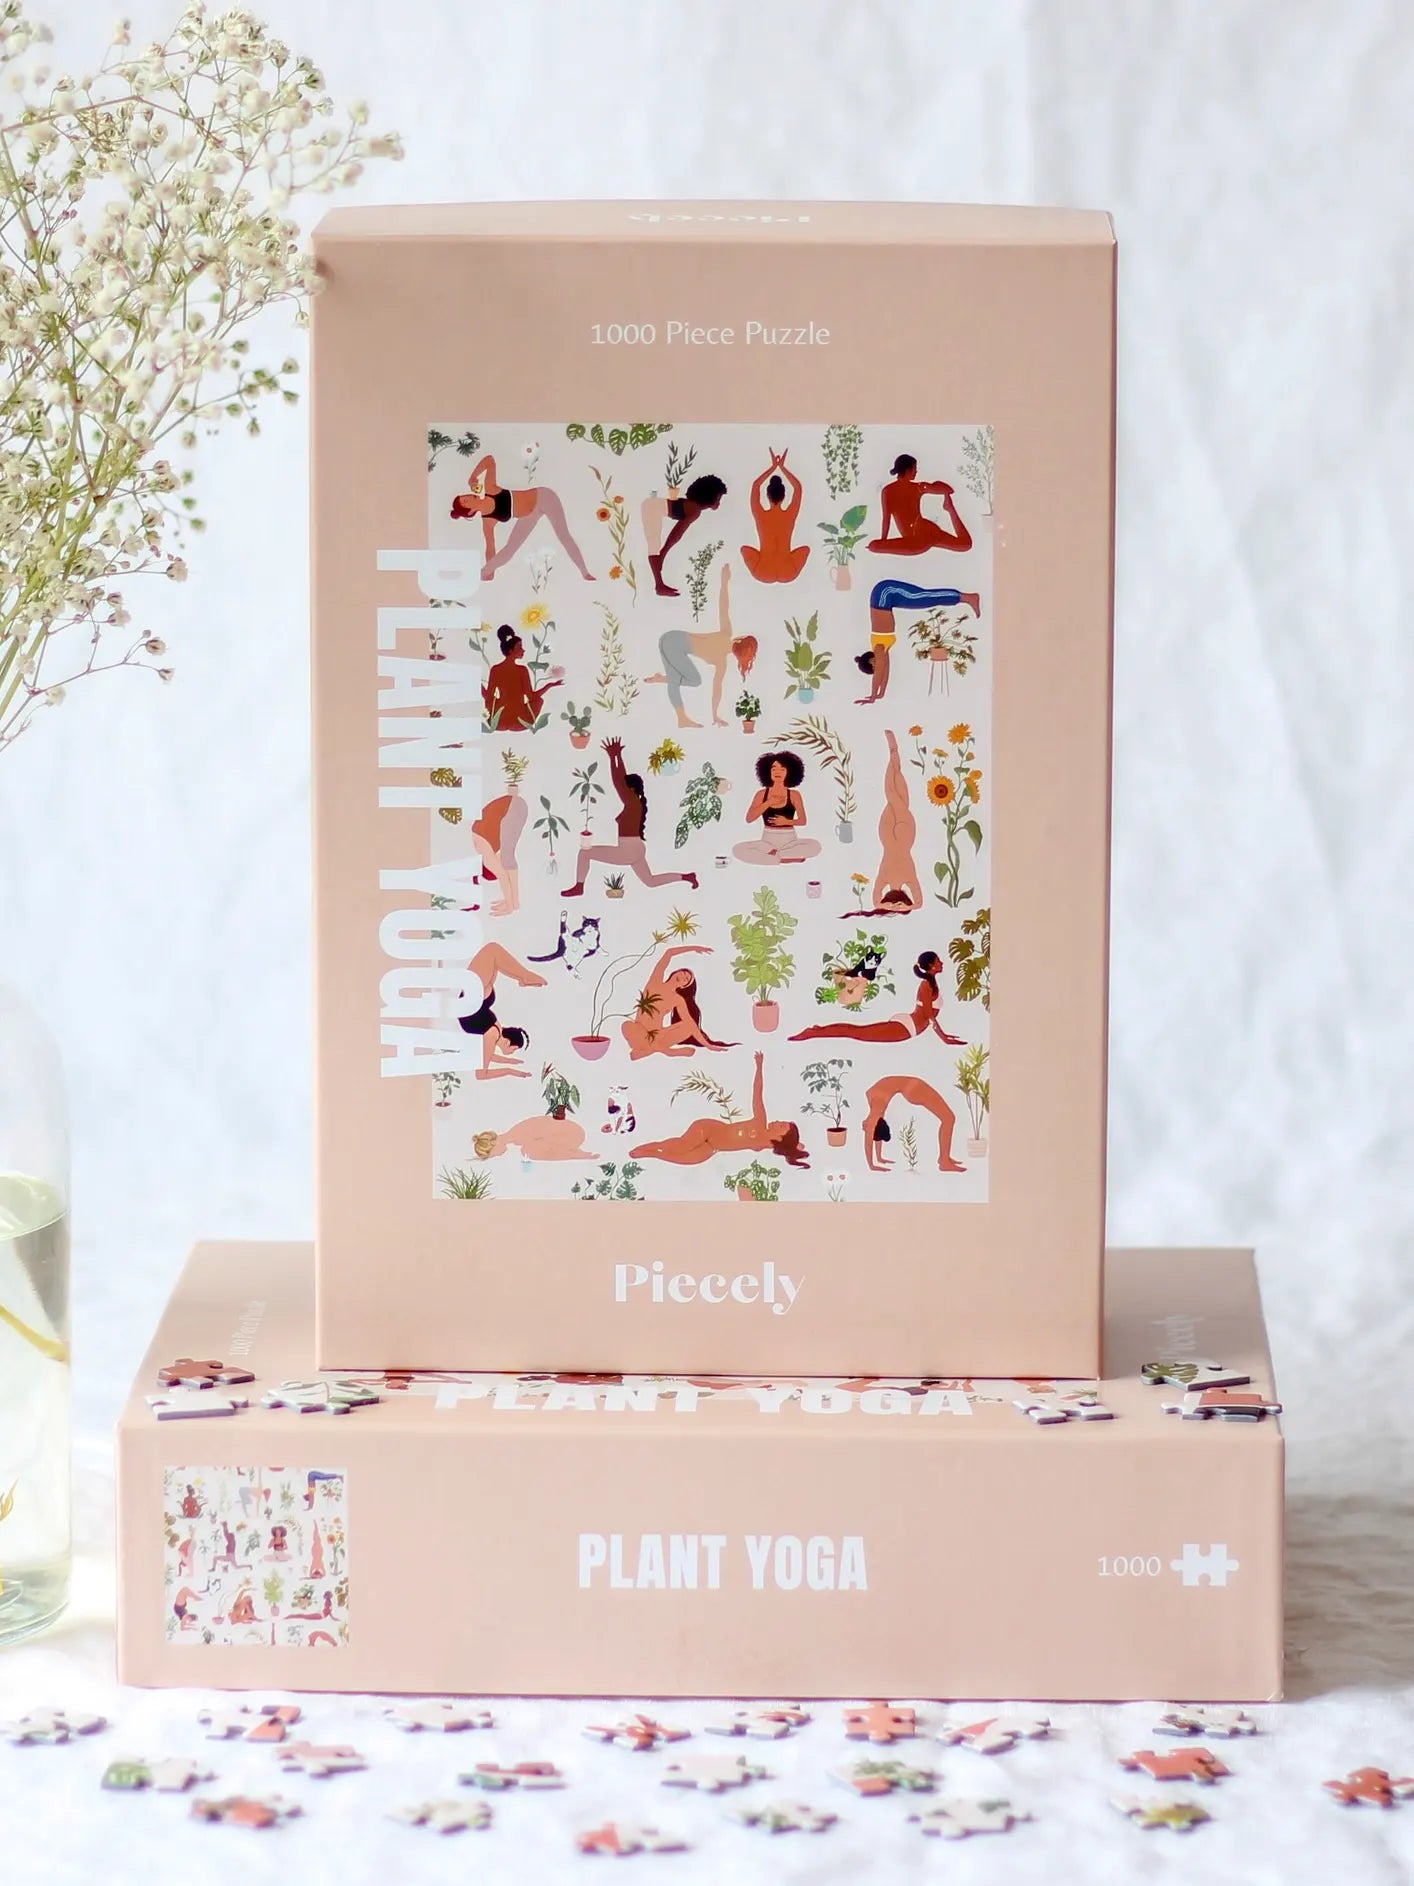 Plant Yoga puzzle, 1000 pieces